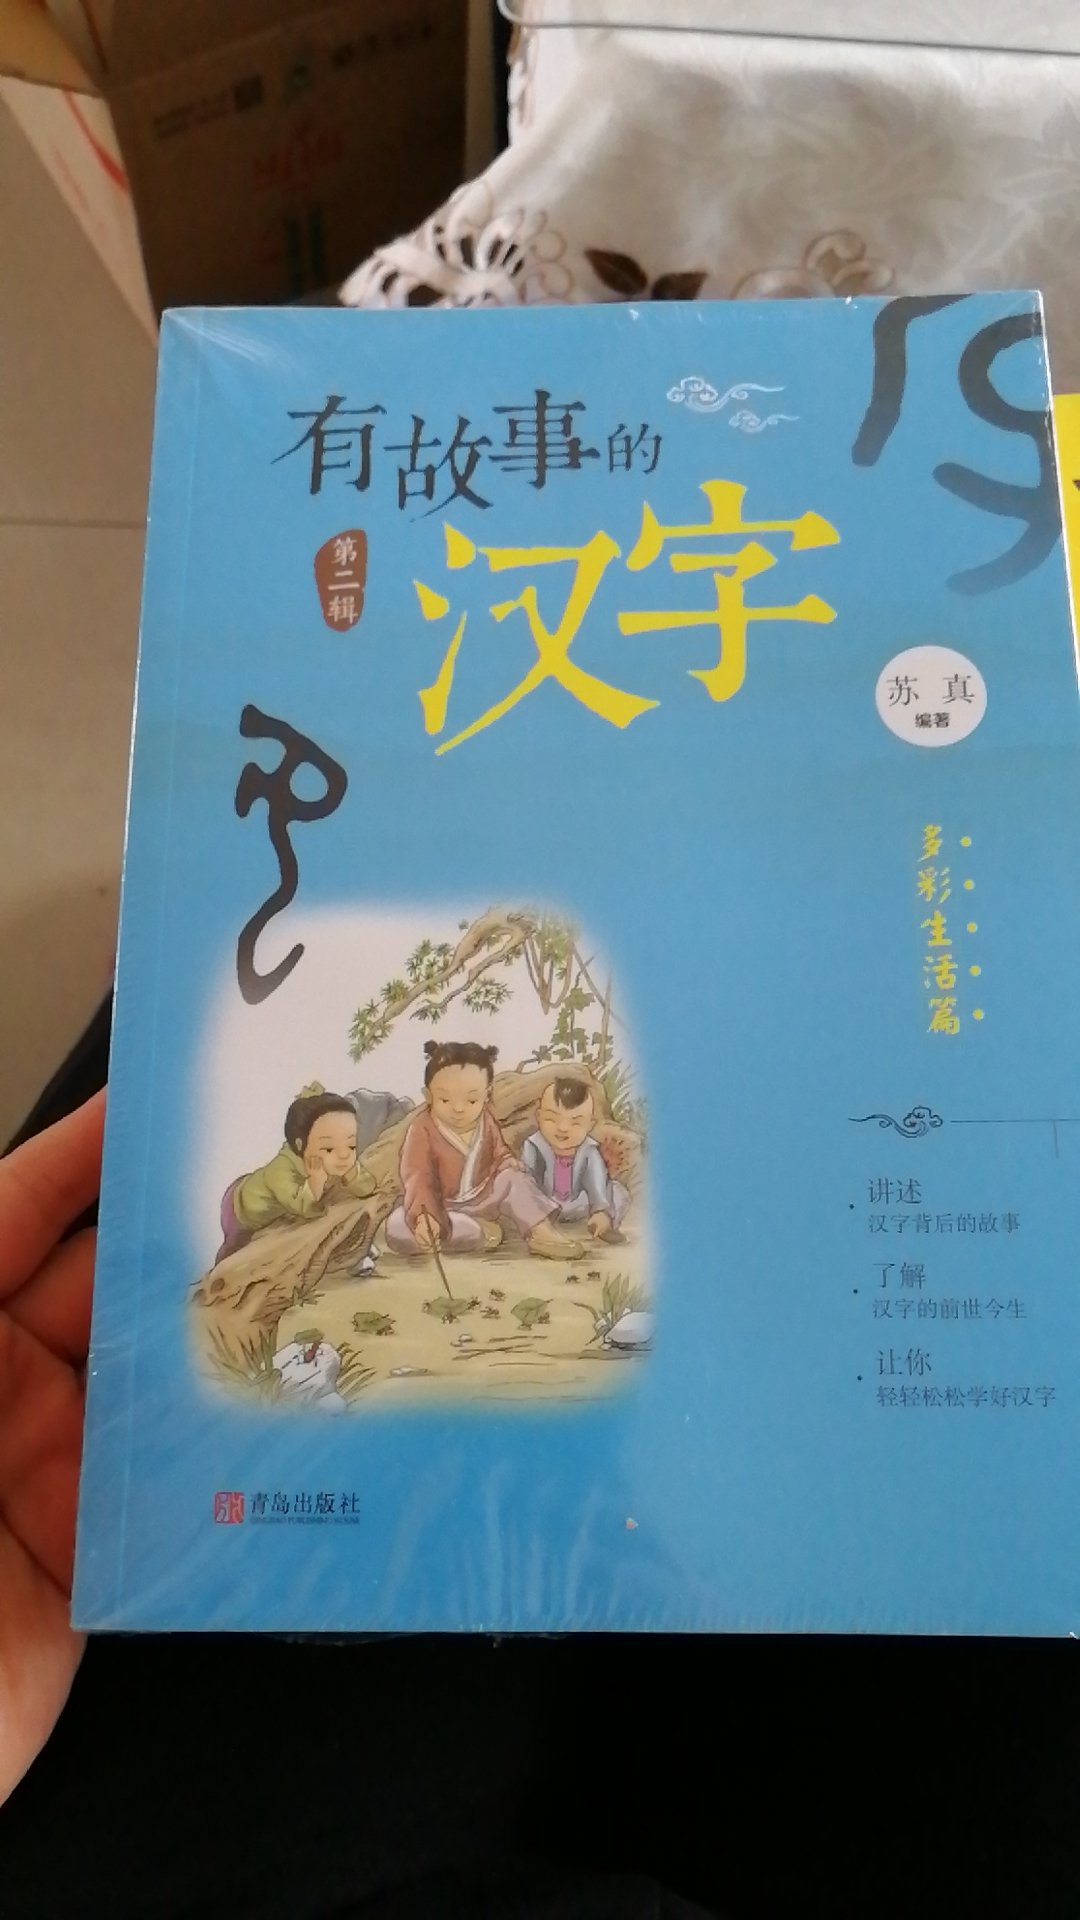 第二次买这套书了，这次买回来送朋友的，了解汉字的历史，很有意思。